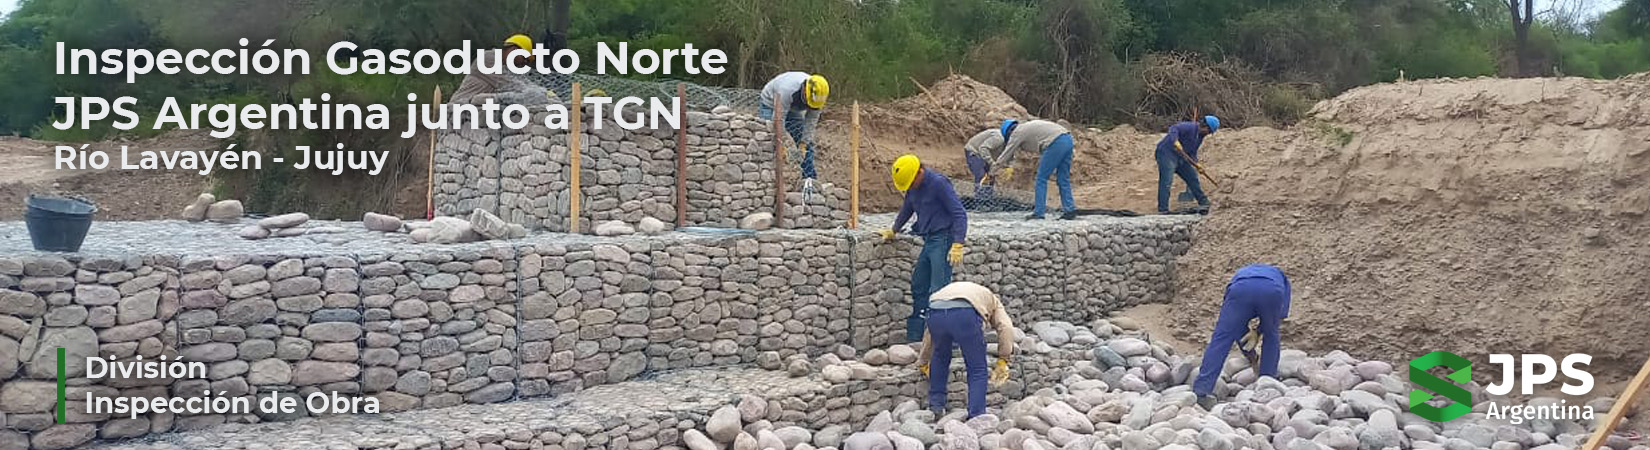 Inspección Gasoducto Norte – JPS Argentina junto a TGN